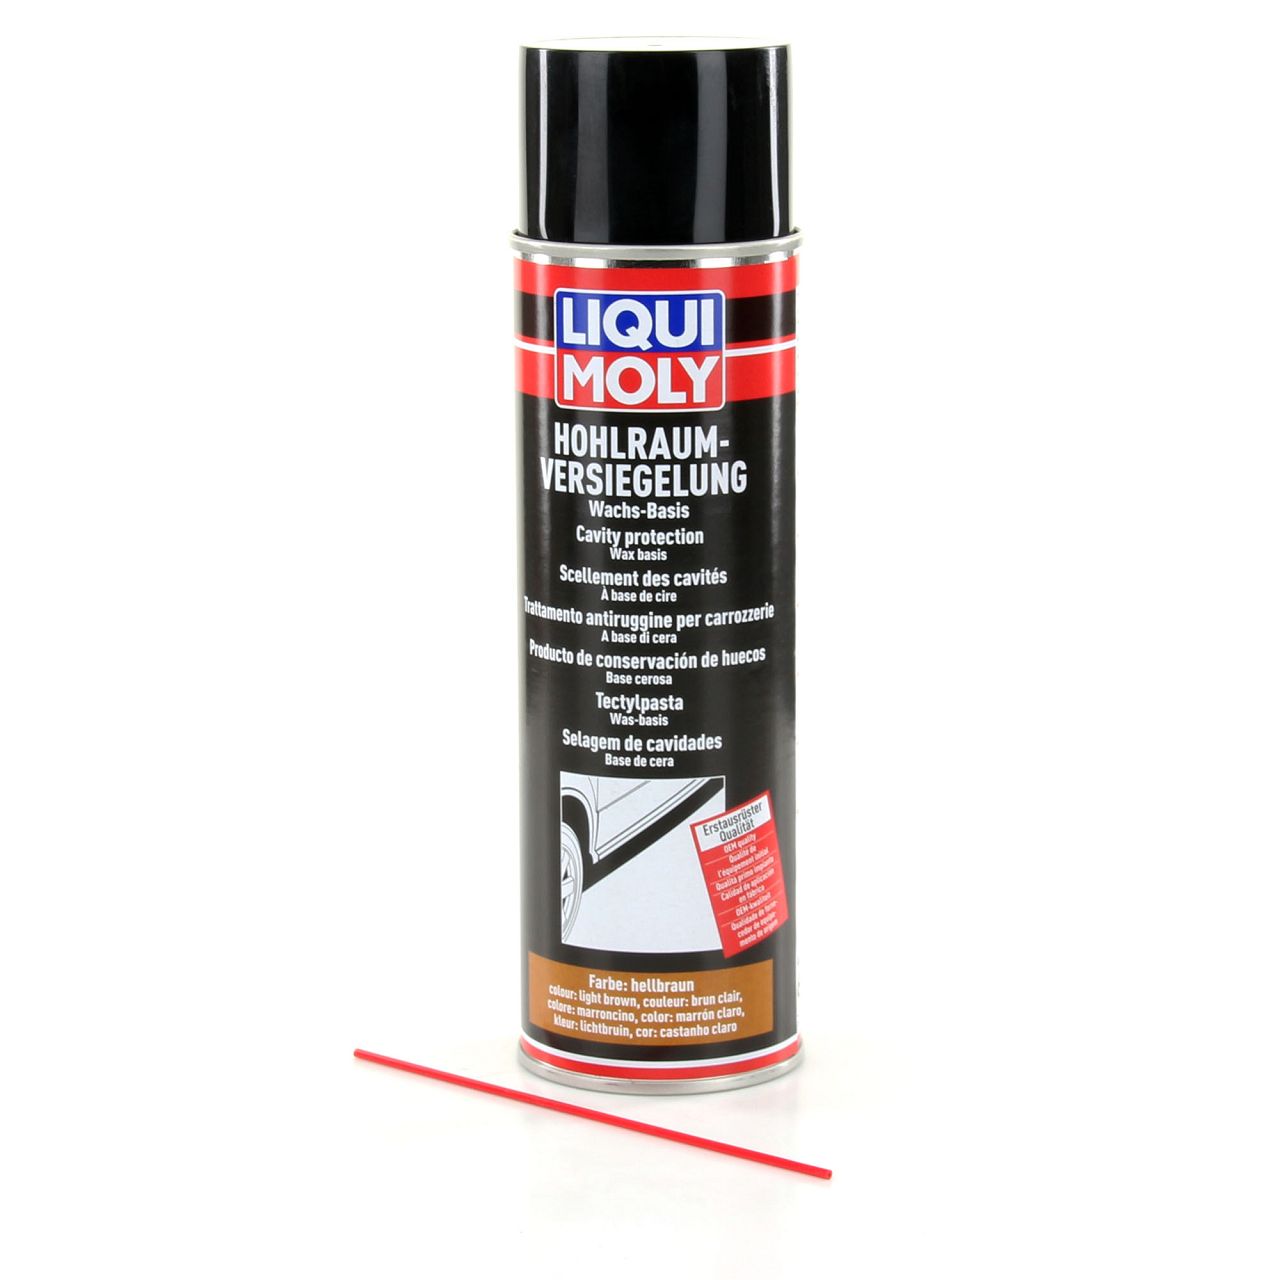 LIQUI MOLY 6107 Hohlraum-Versiegelung Konservierung hellbraun Spray 500ml